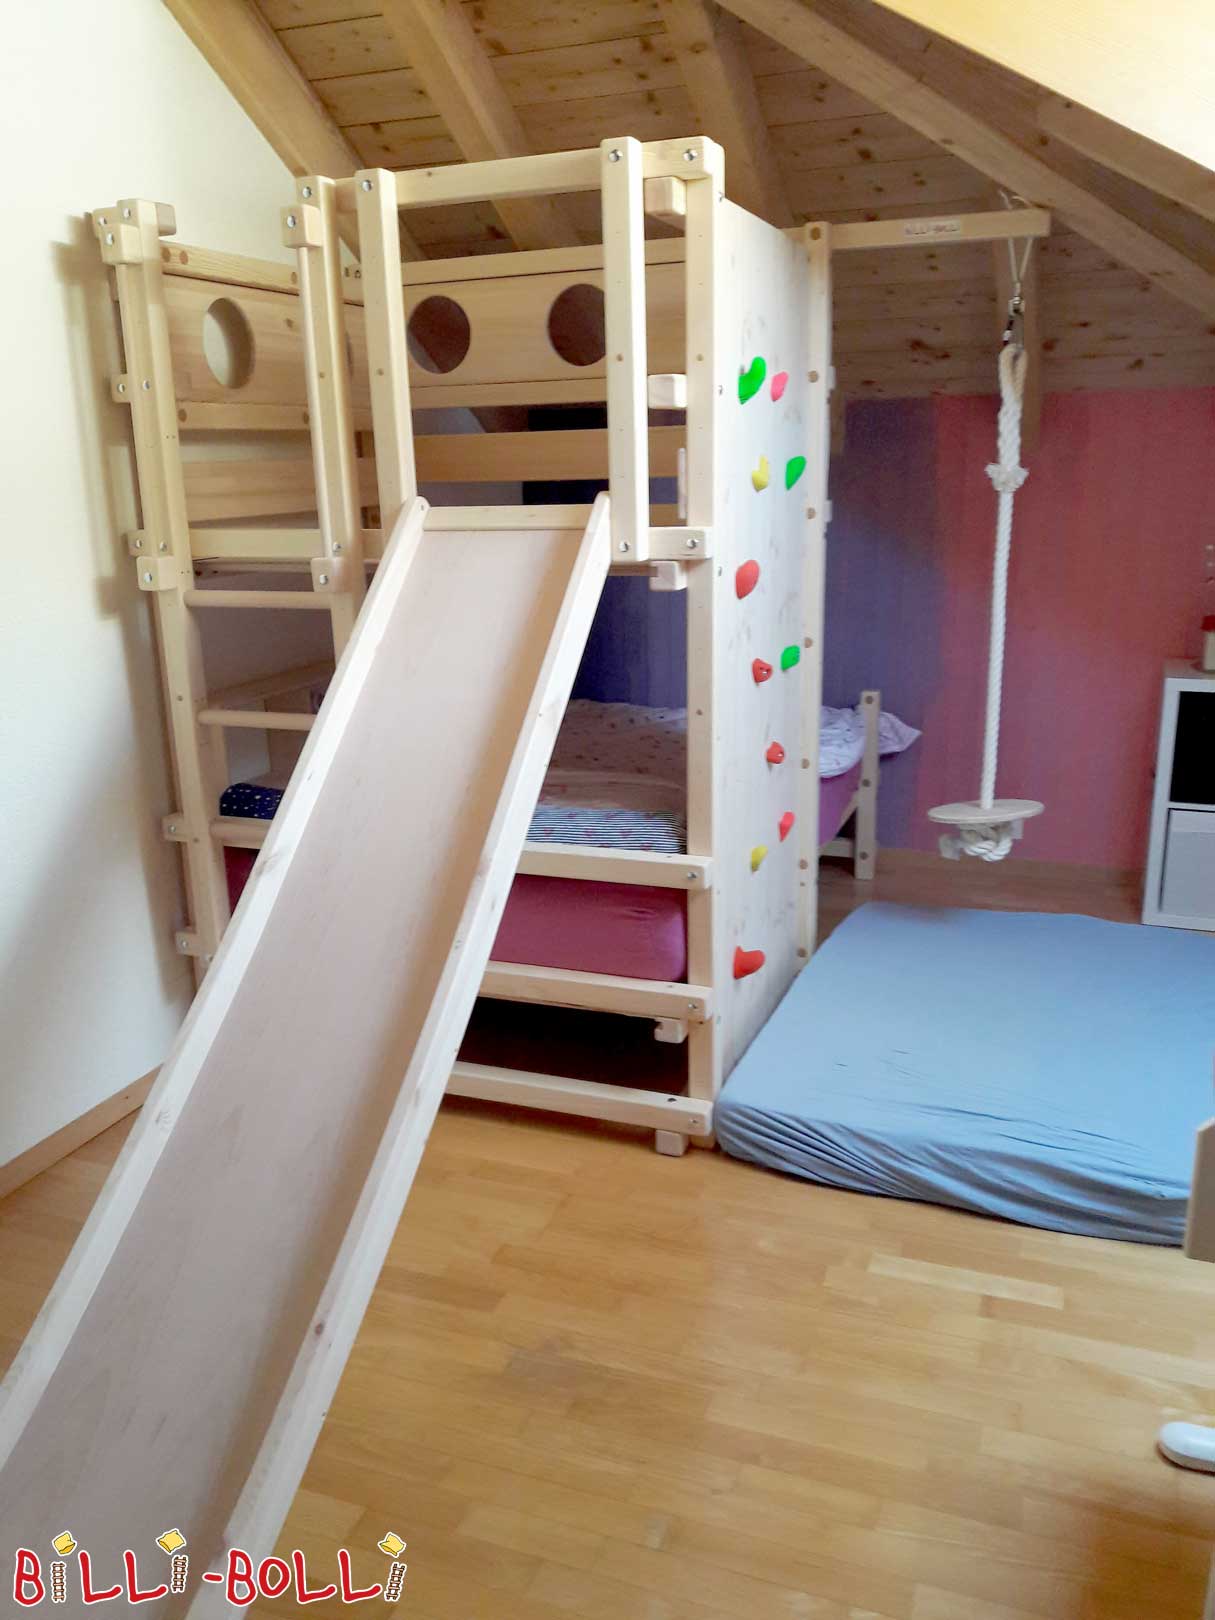 Zabawa wspinaczkowa w pokoju dziecięcym: spadziste łóżko dachowe w sosnie, … (Łóżko dachowe spadziste)